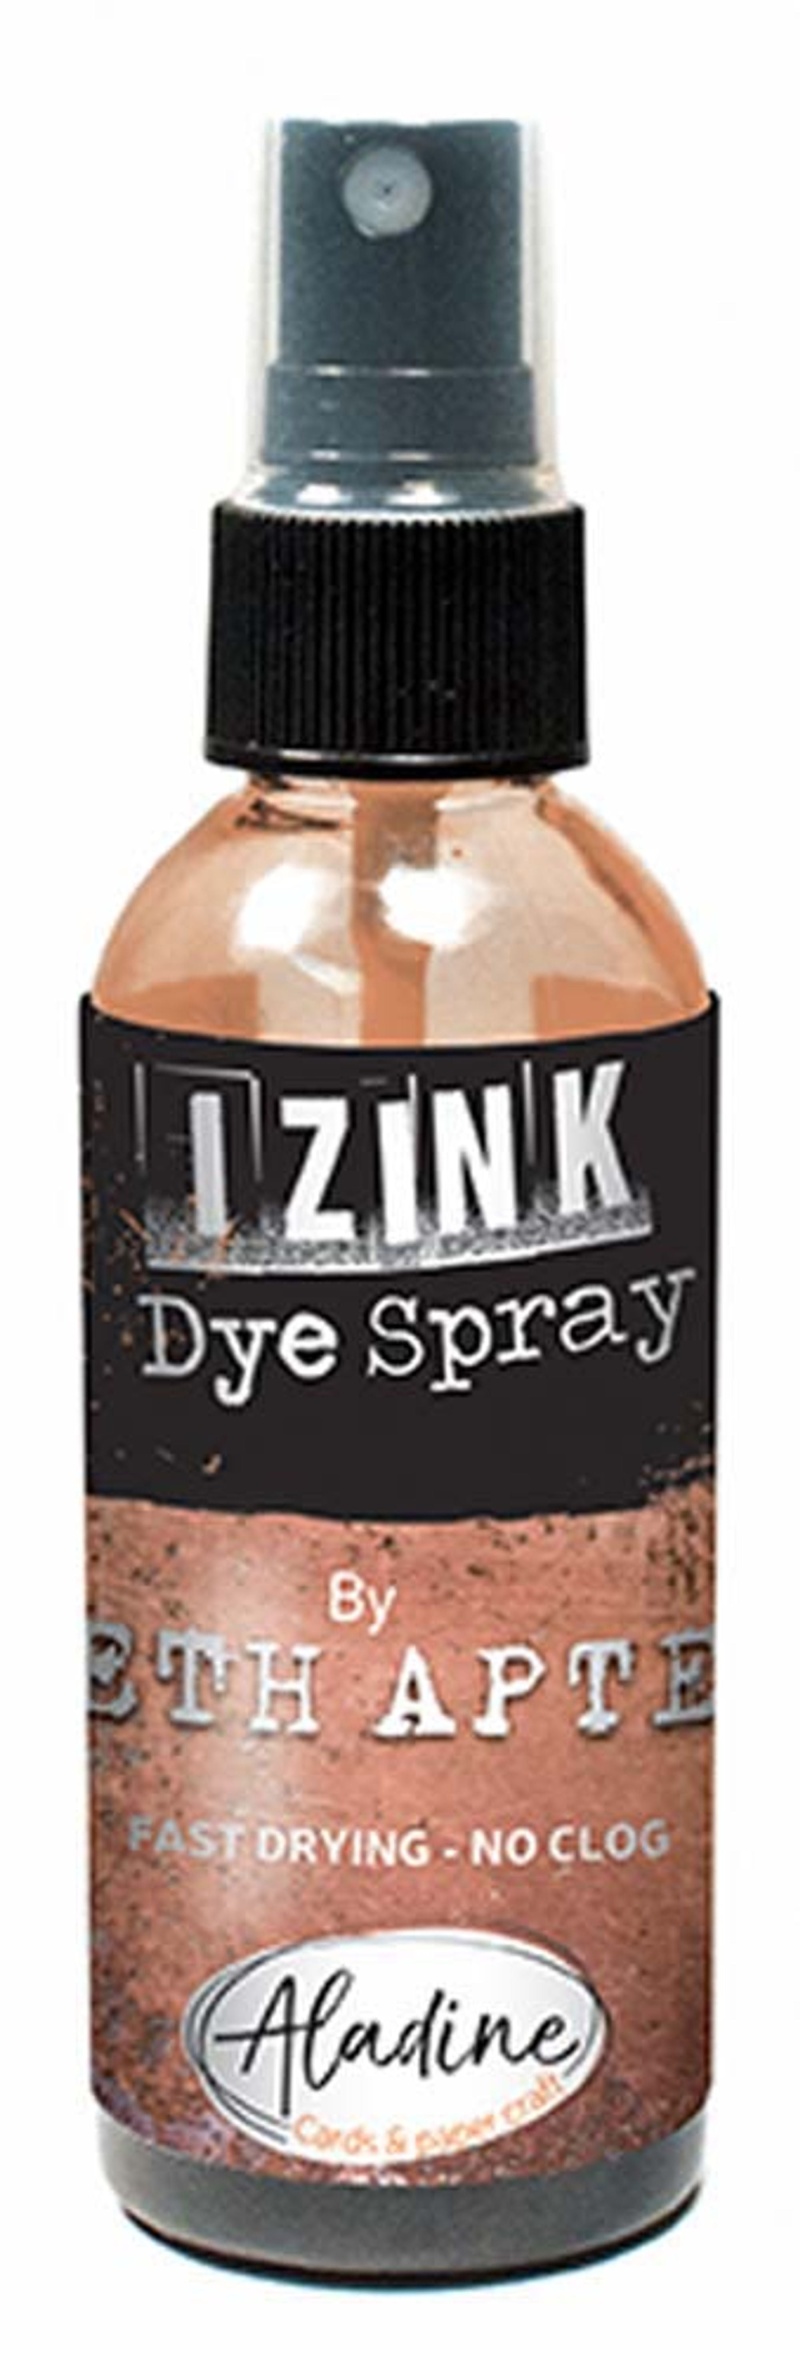 Izink Dye Spray Seth Apter